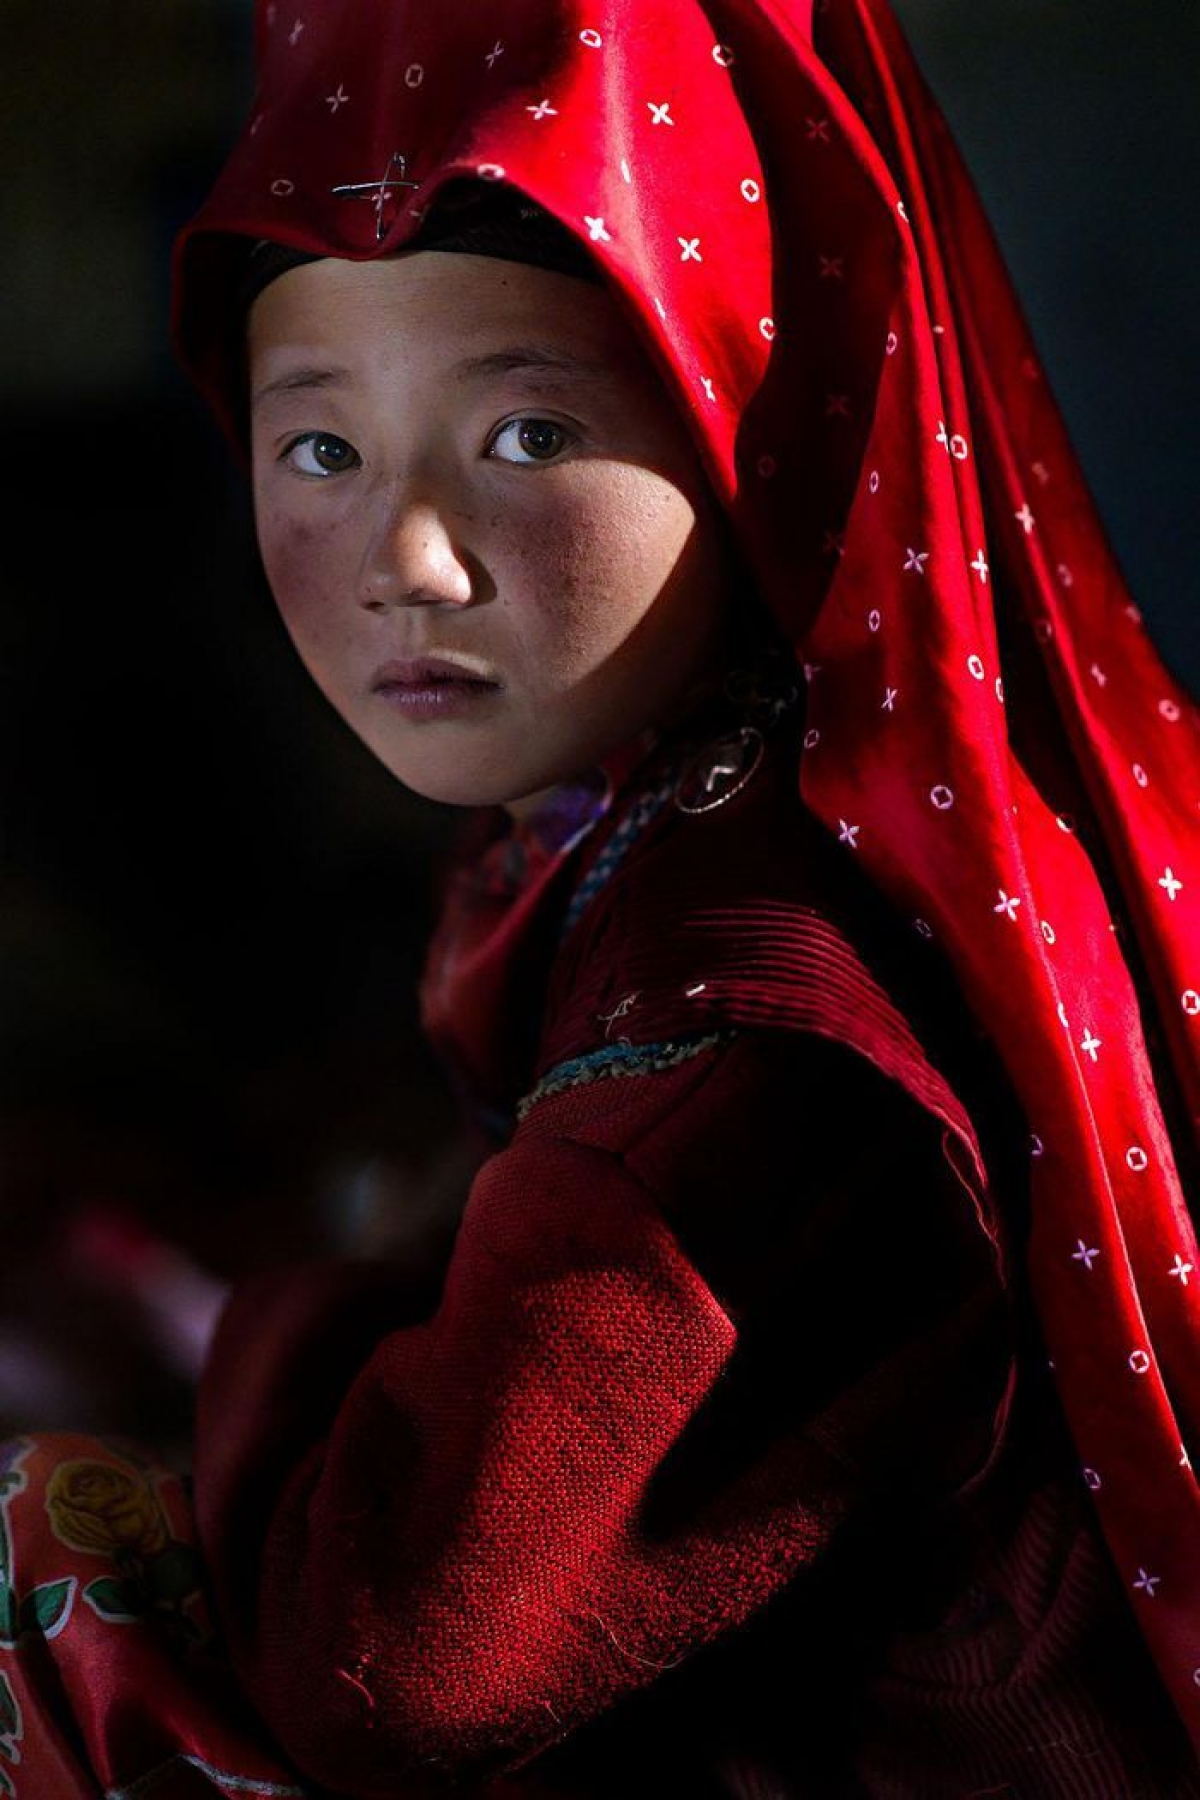 Bức ảnh chụp người phụ nữ trong trang phục đỏ truyền thống ở vùng núi cao Afghanistan: "Họ sống trong khói bụi của những sa mạc nhưng dường như là nữ hoàng", nhiếp ảnh gia Nicola Ducati viết